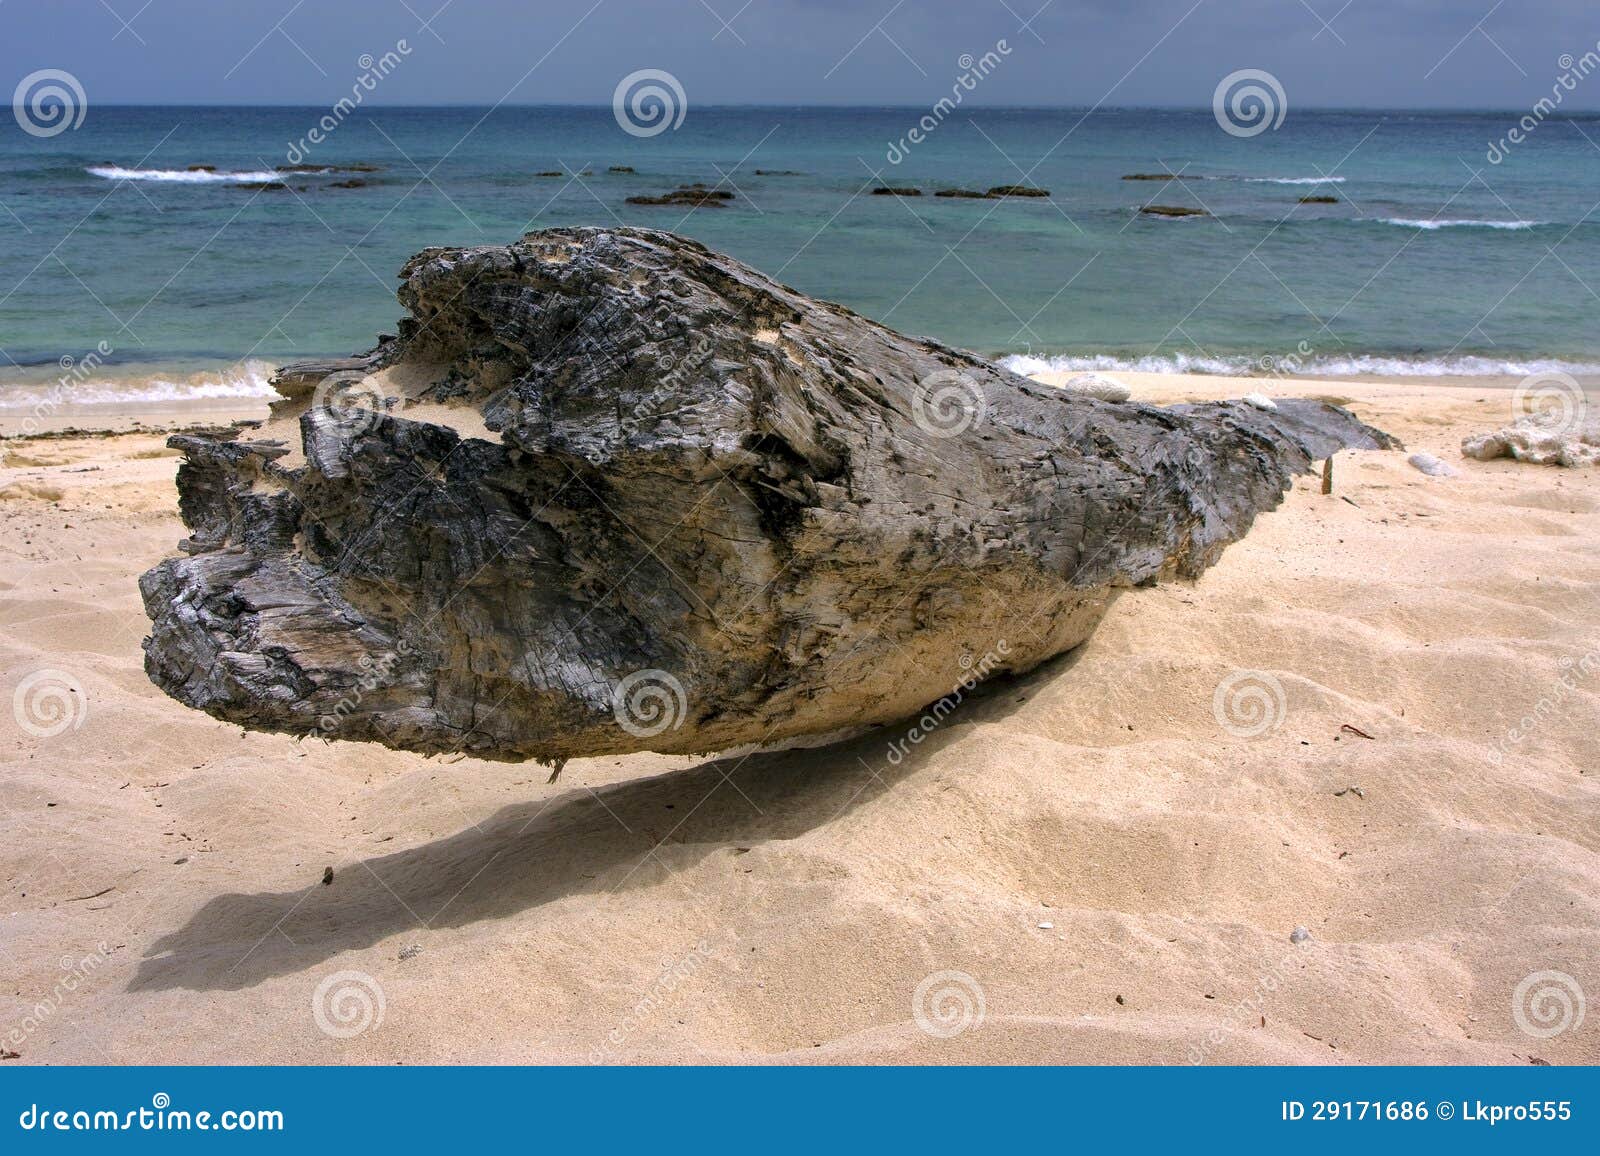 beach rock stone and tree in republica dominicana